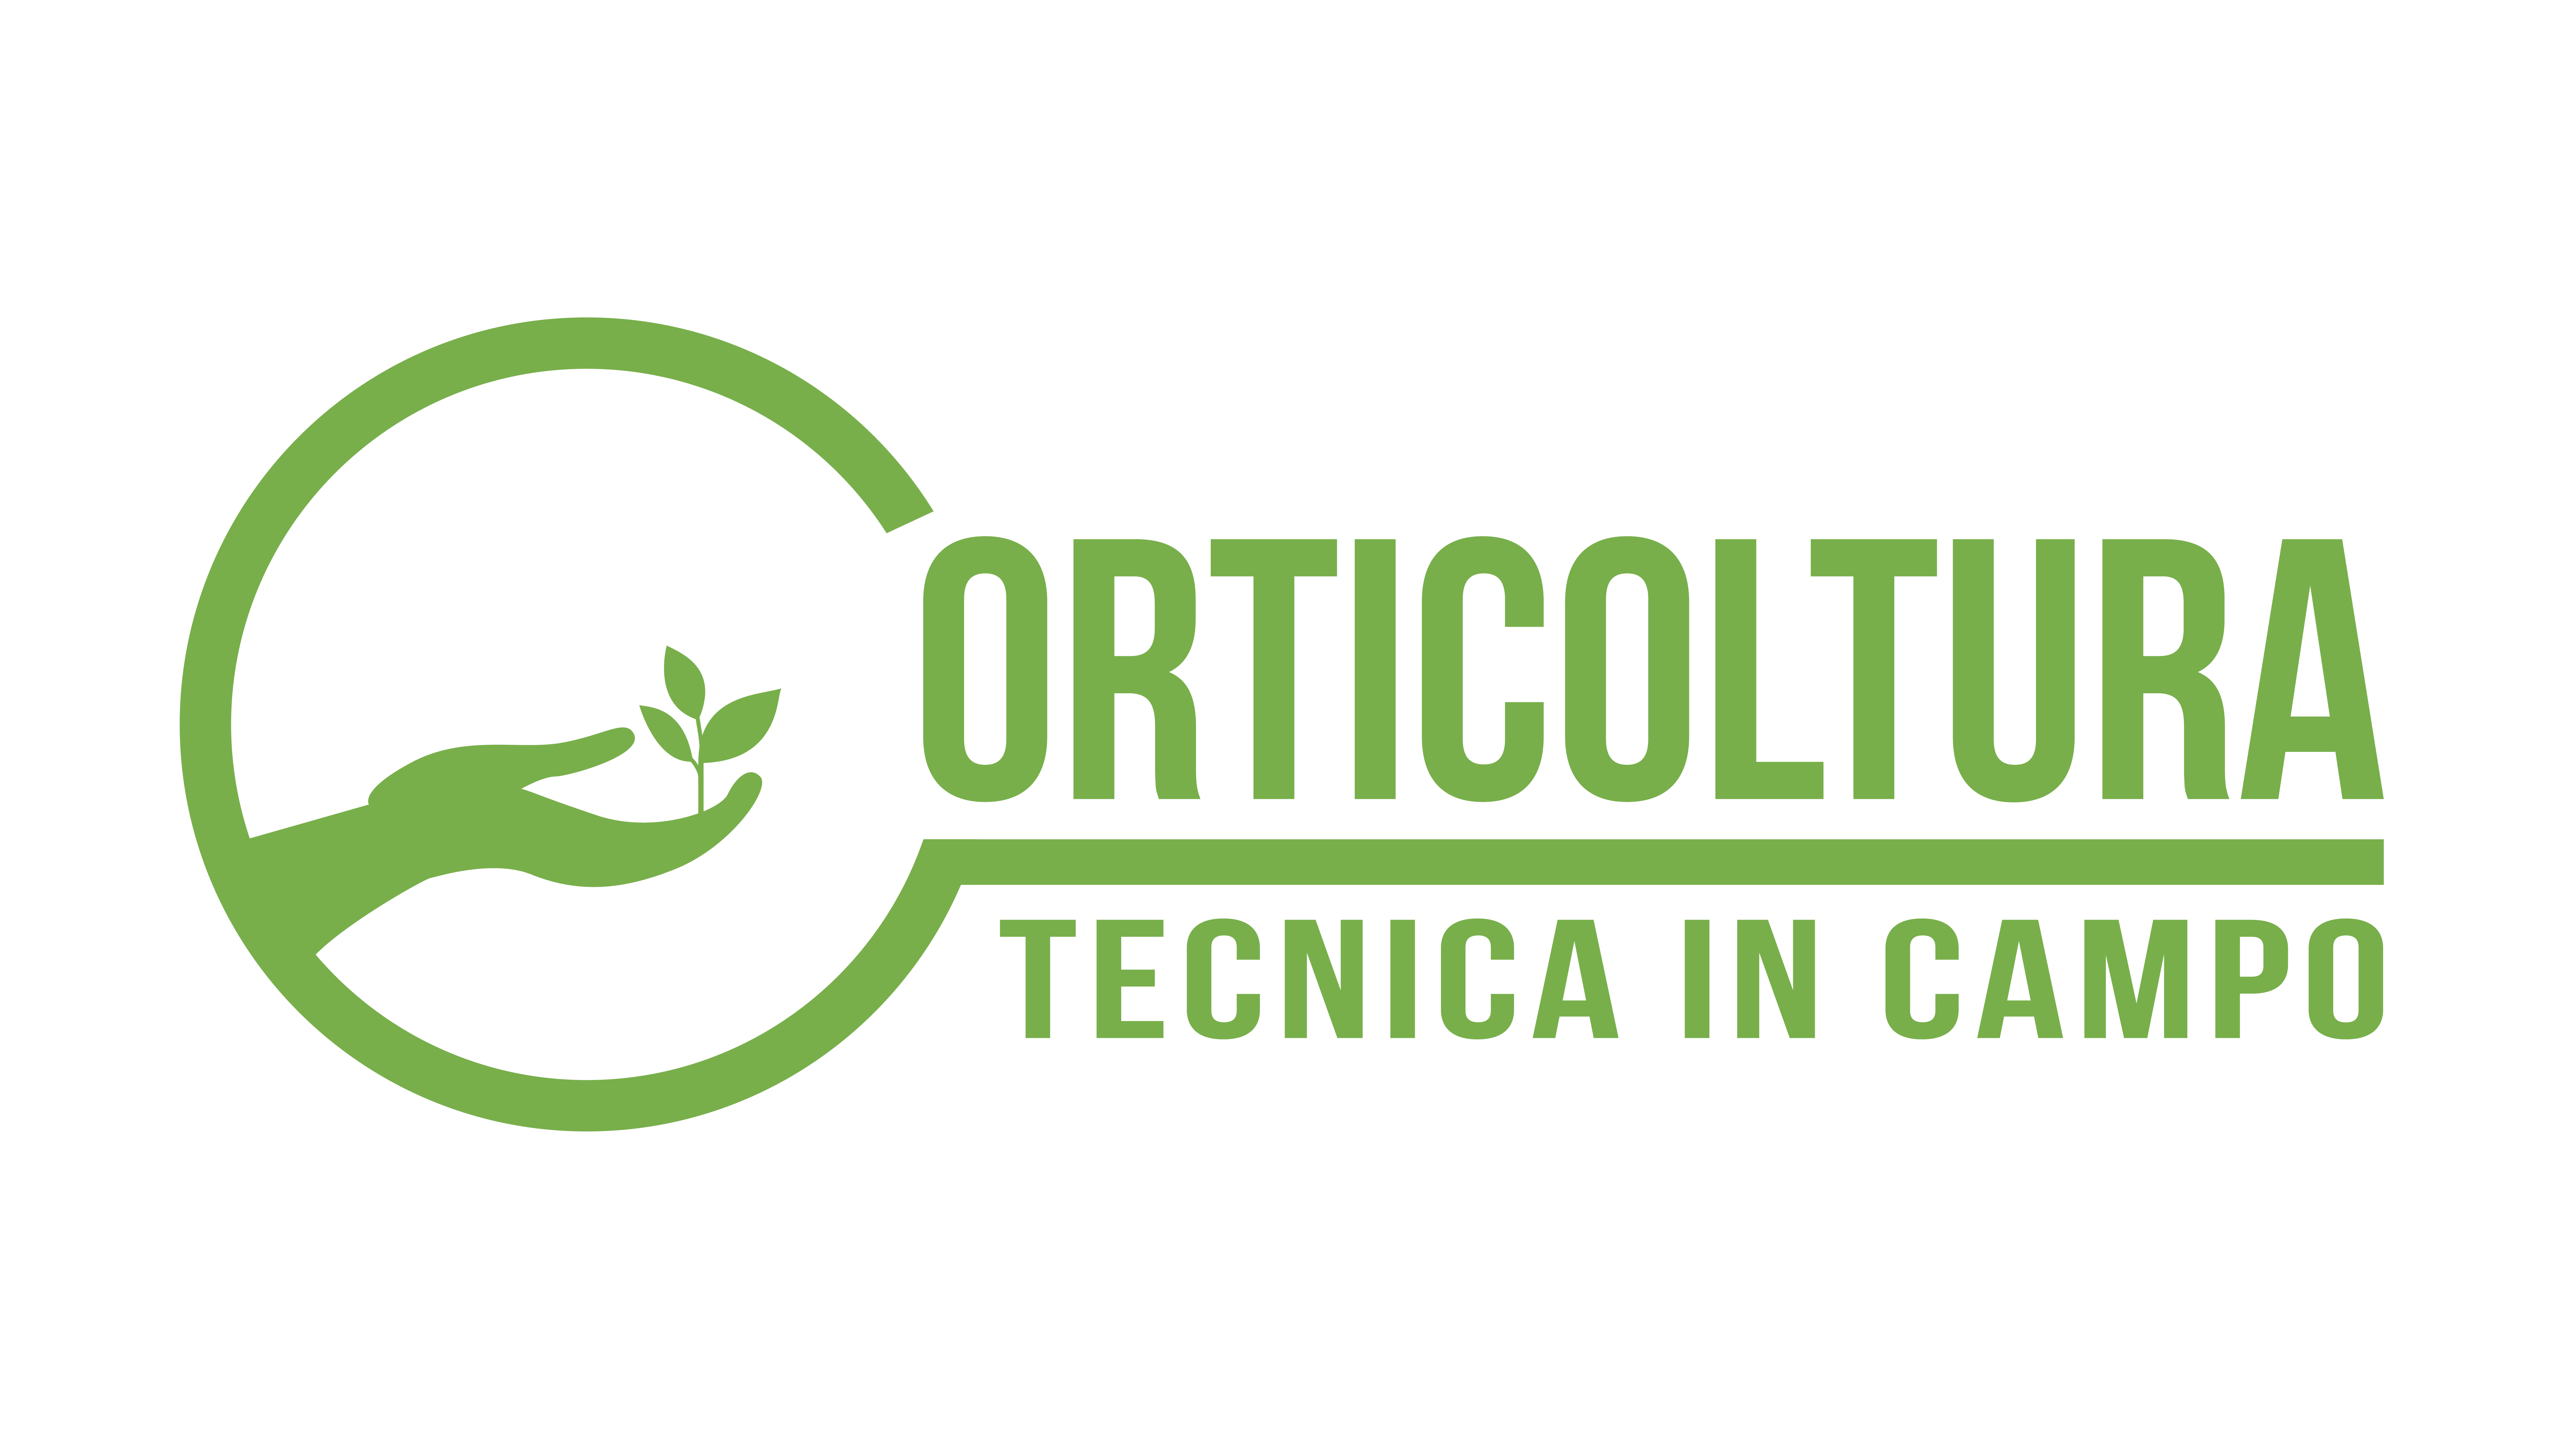 Международное овощеводческое мероприятие Orticoltura Tecnica in Campo 2024